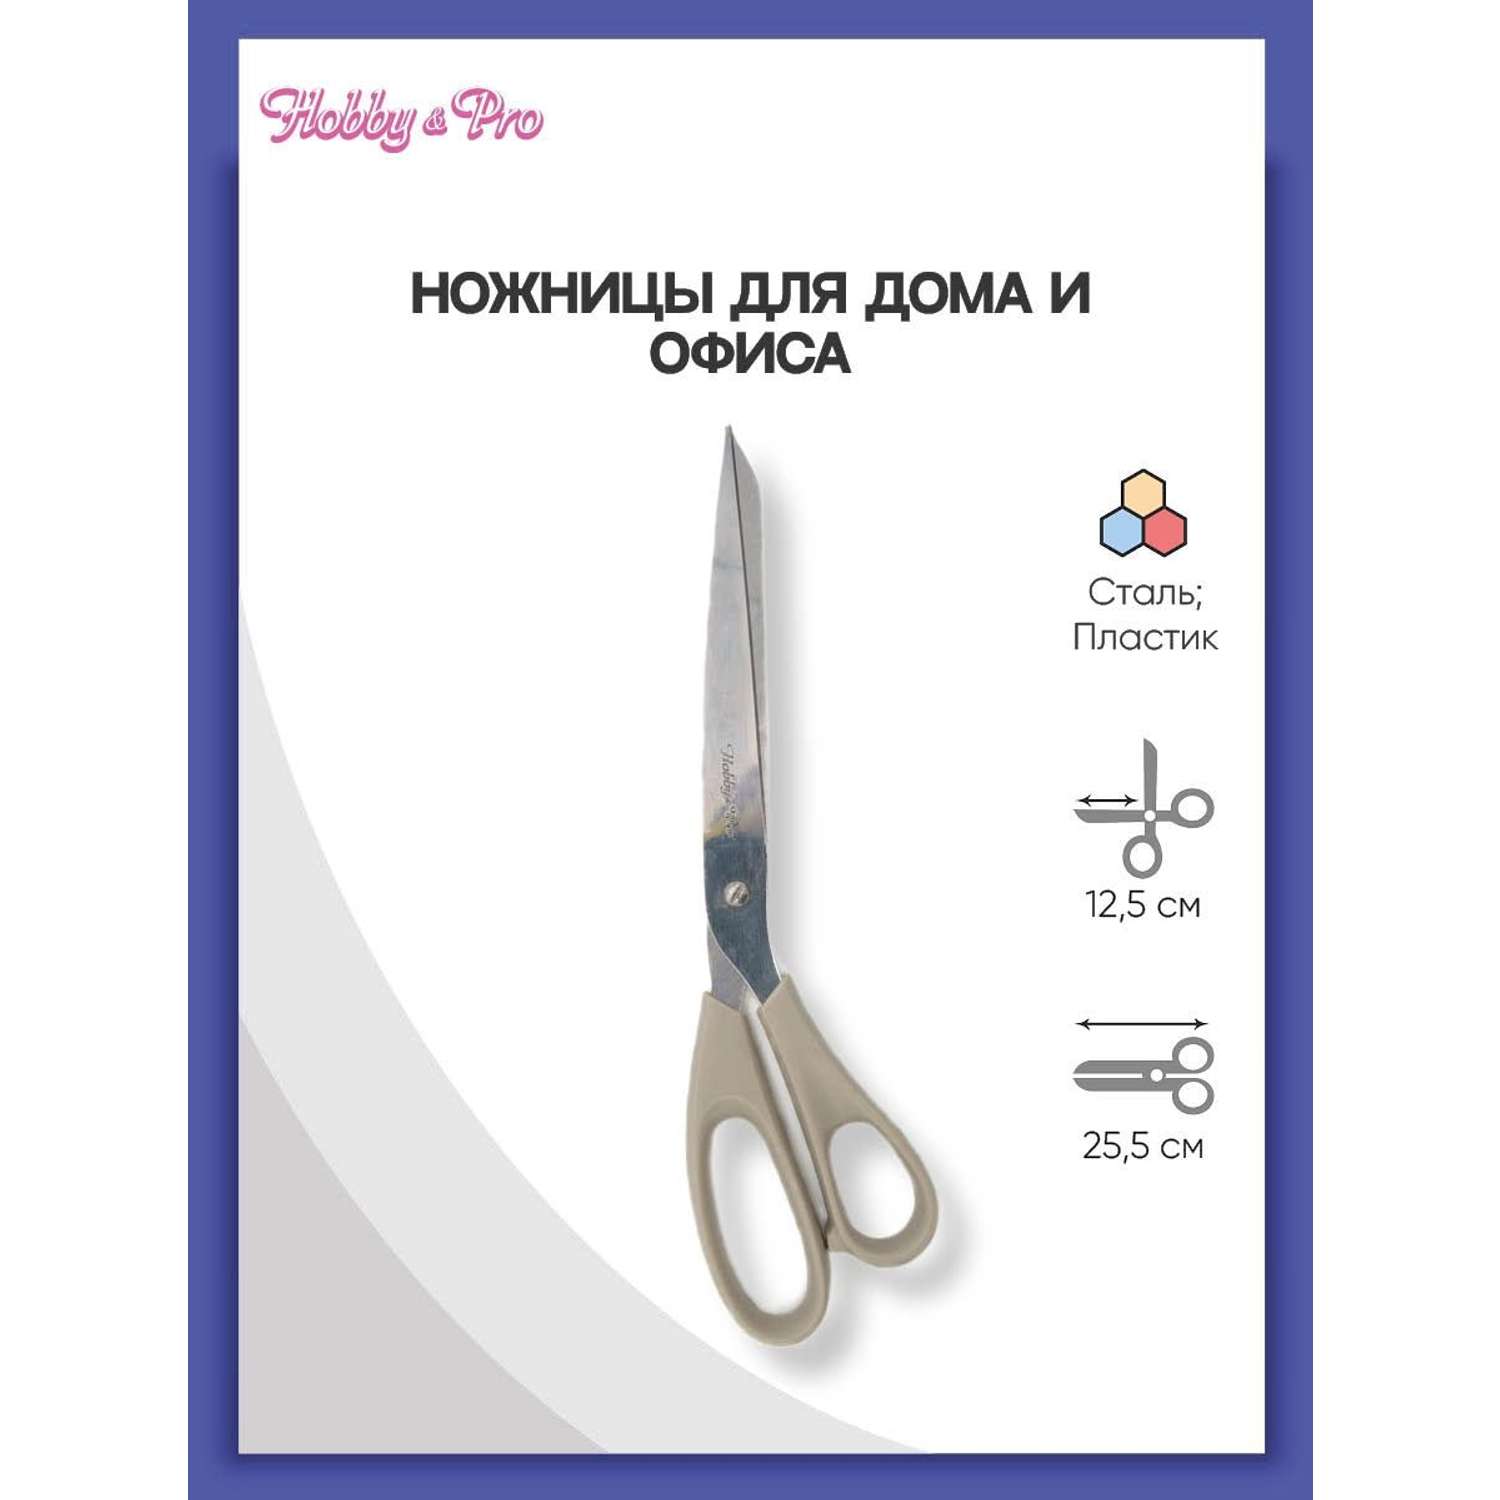 Ножницы Hobby Pro Ножницы для дома и офиса 25.5 см - фото 1